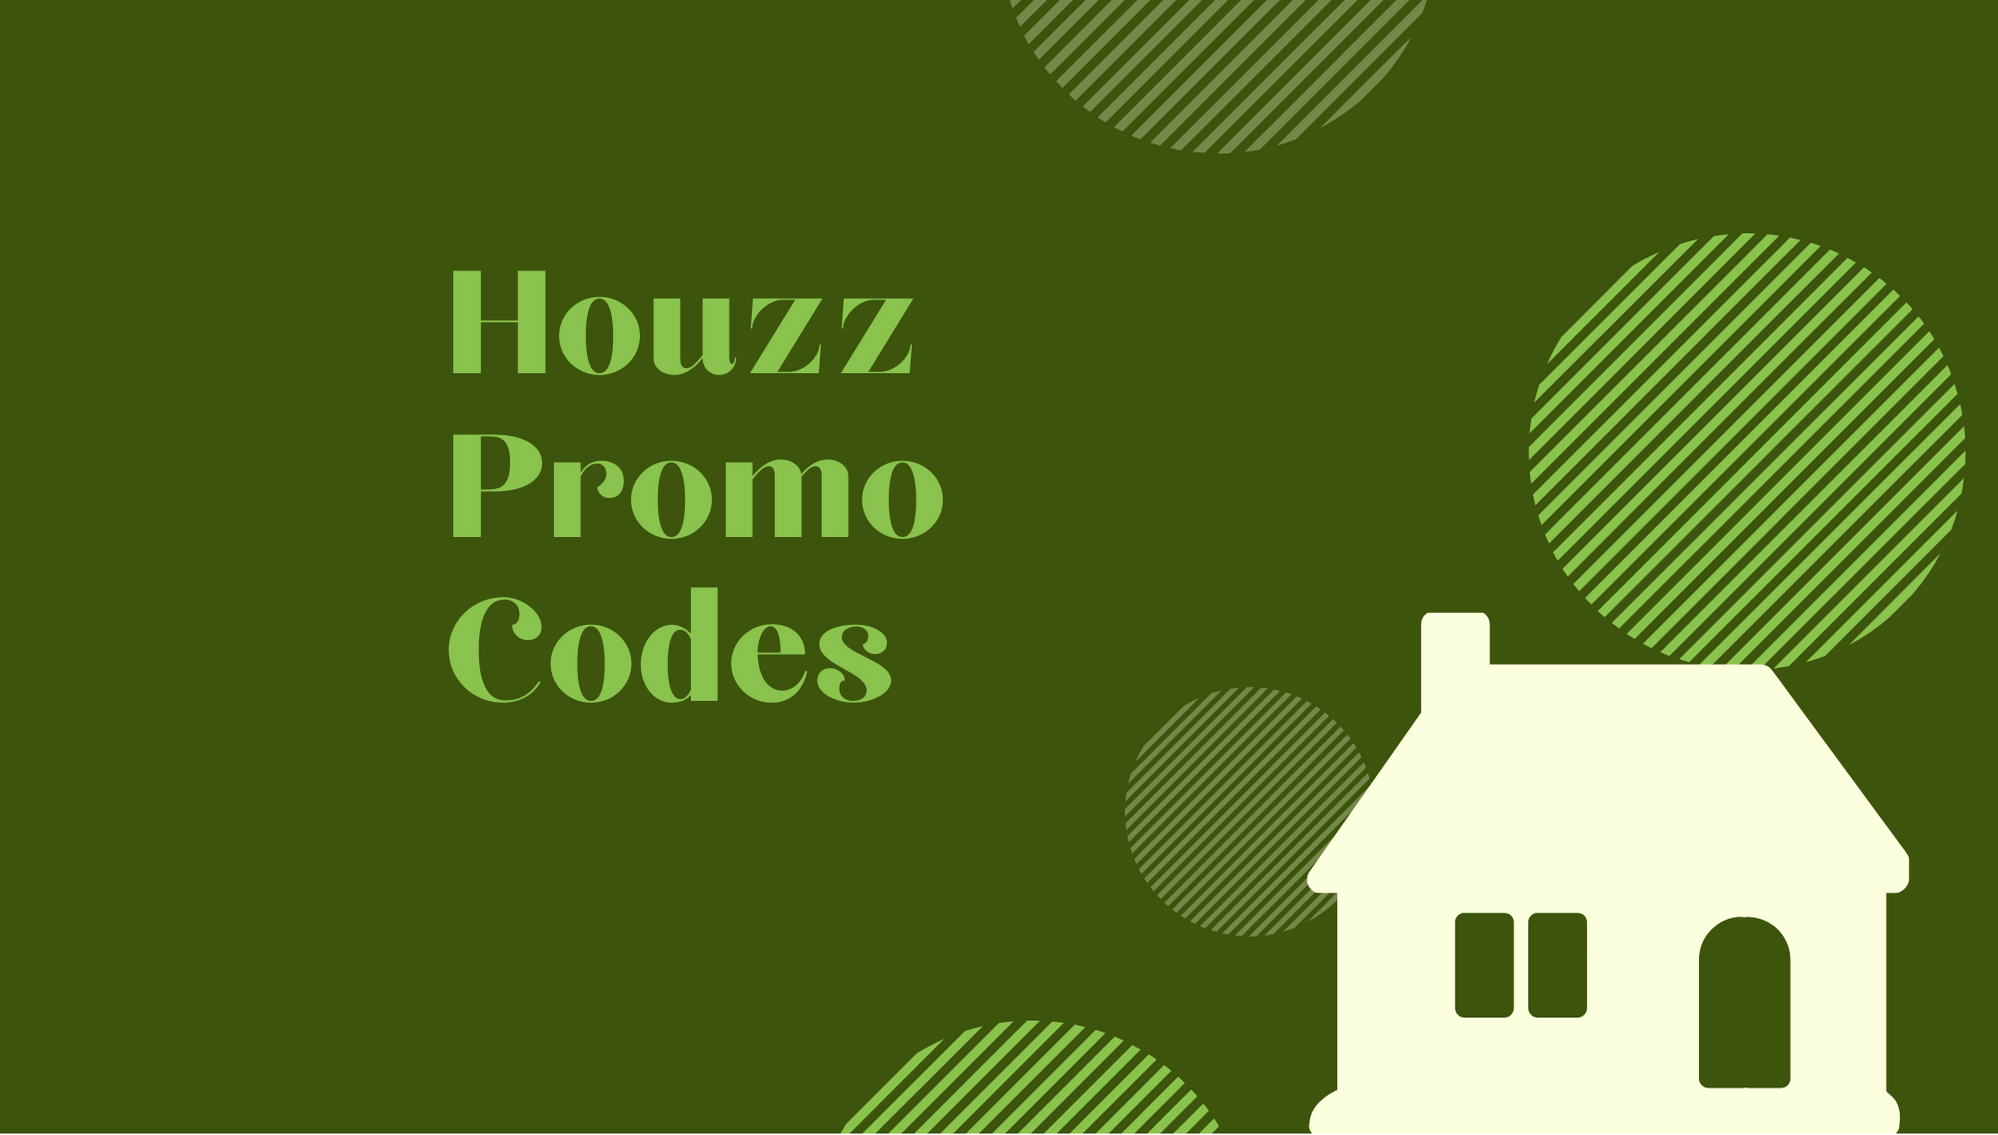 houzz promo code